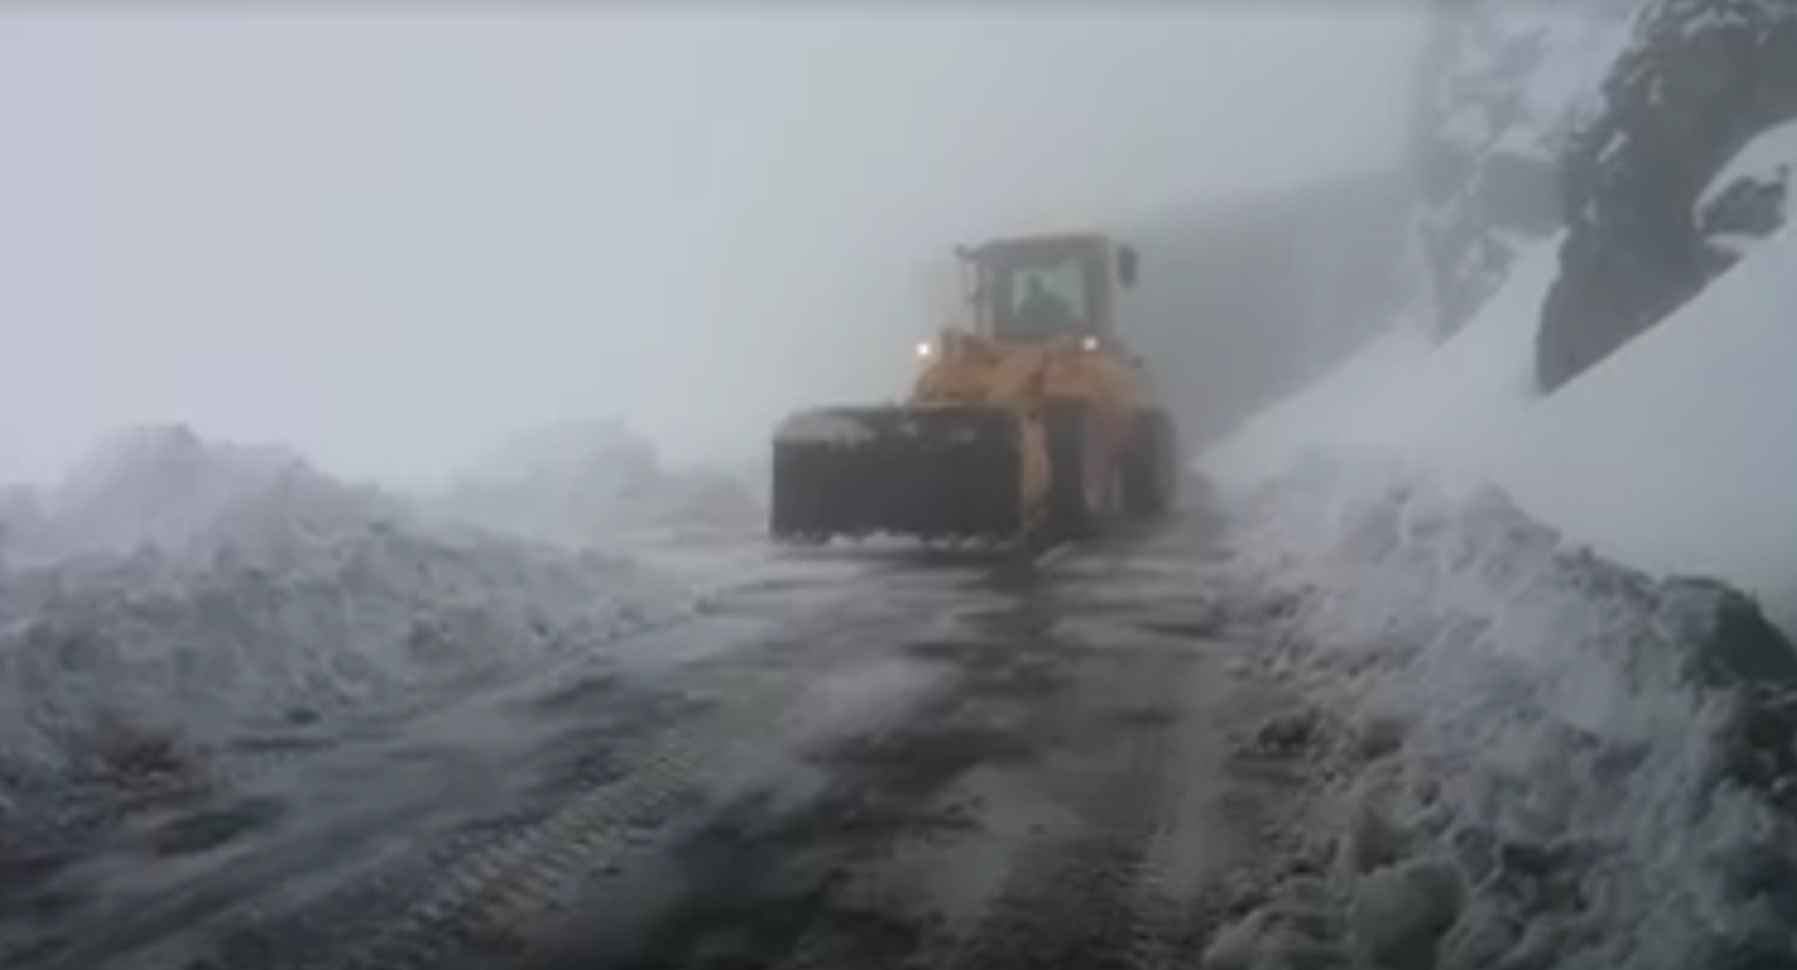 Iarna în toată regula pe Transfăgărăşan. Stratul de zăpadă a atins aproape un metru